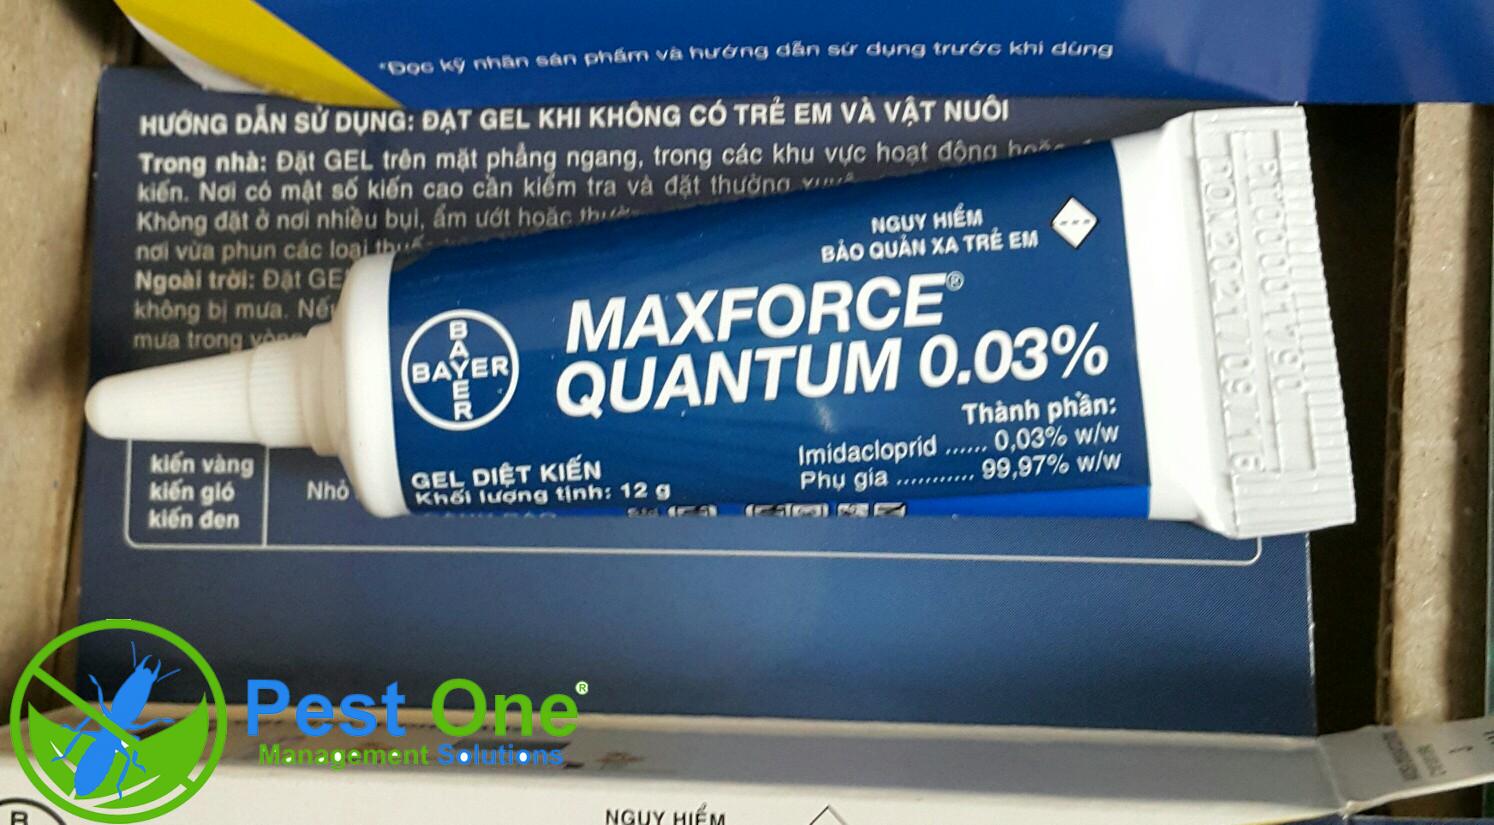 thuốc diệt kiến maxforce quantum